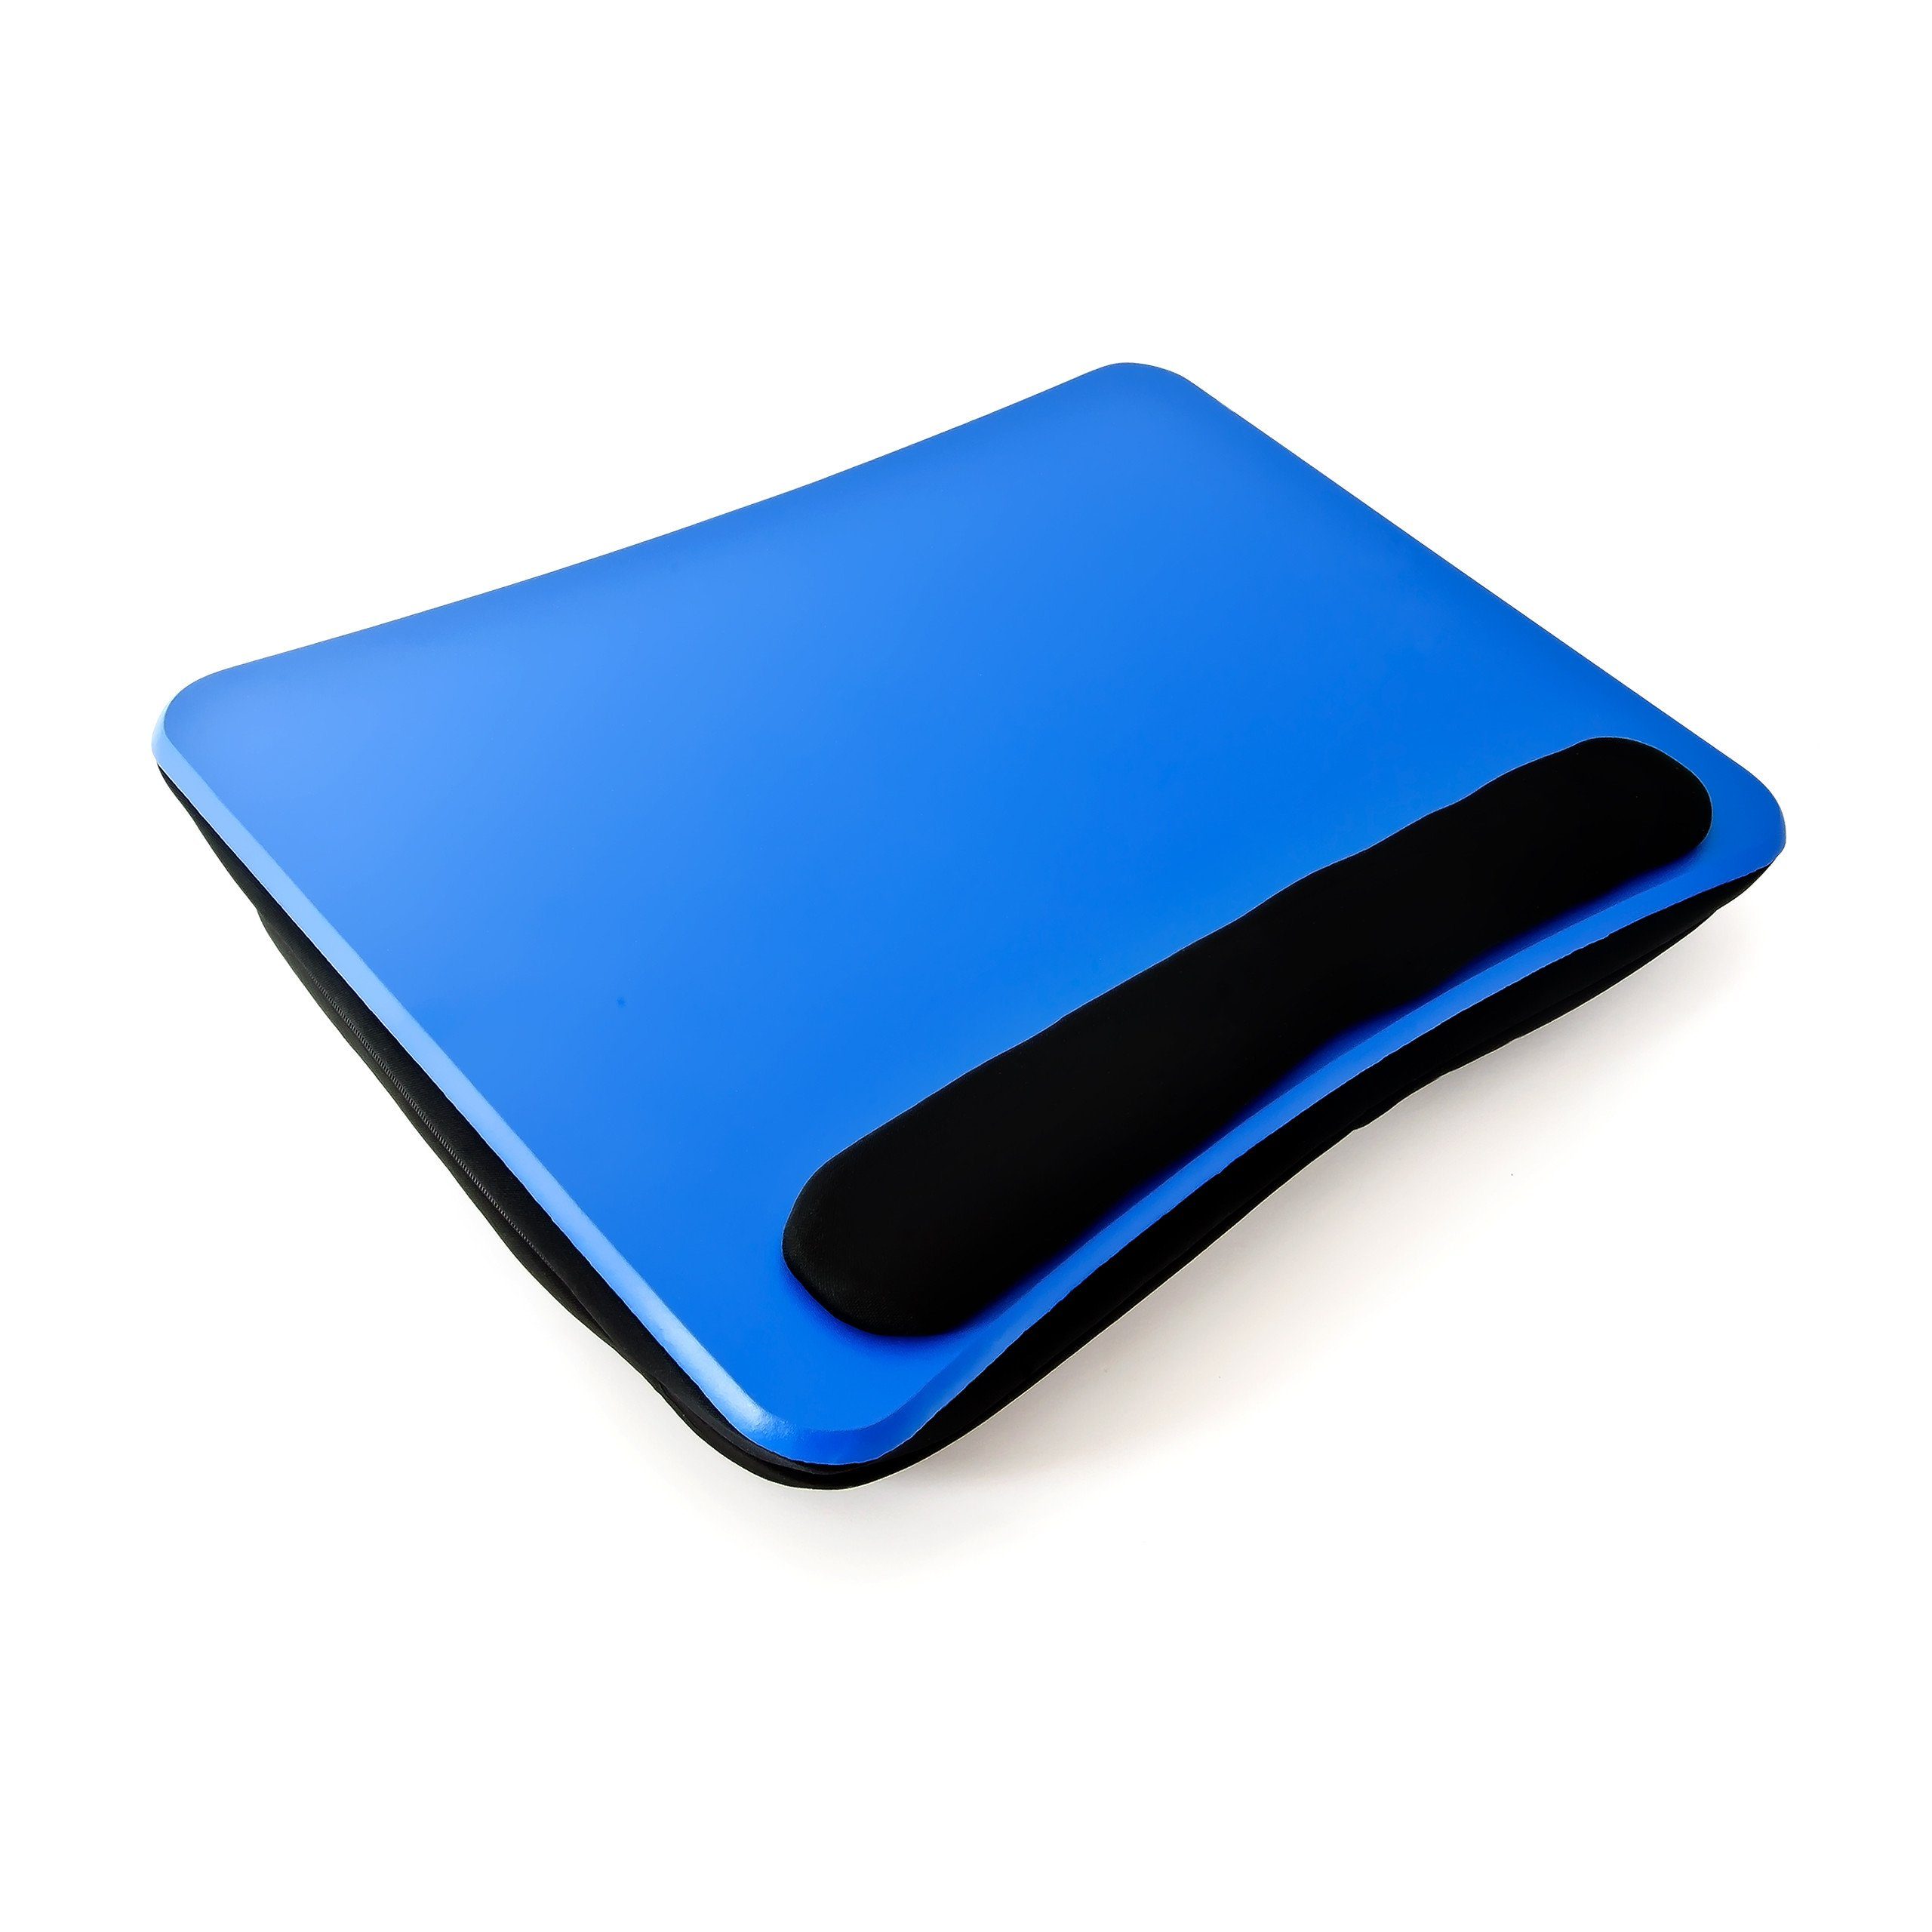 relaxdays Laptop Tablett Laptopkissen Handauflage mit Faserplatte Blau